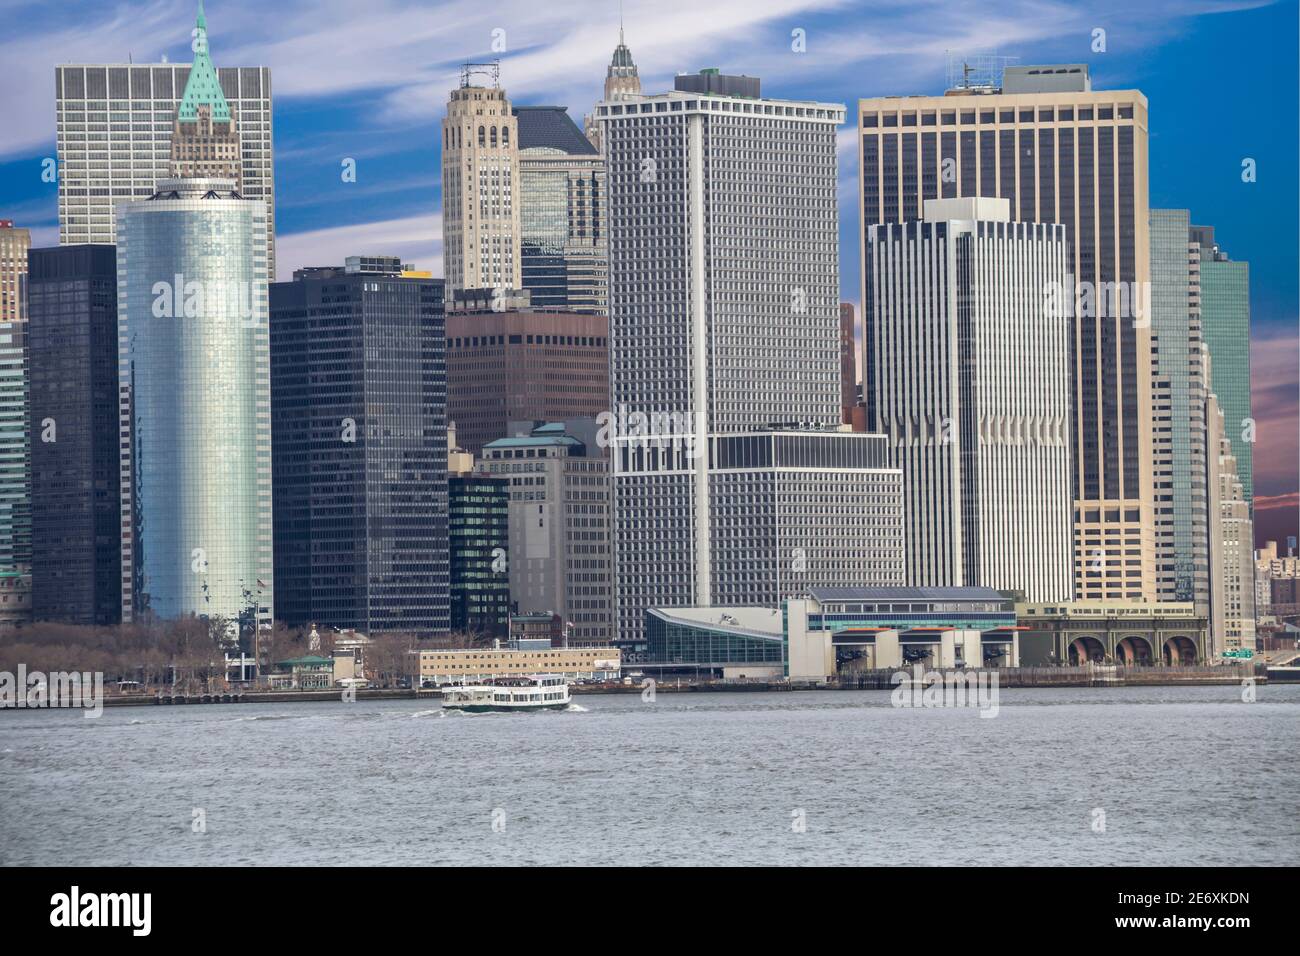 Lower Manhattan, New York, United States Stock Photo